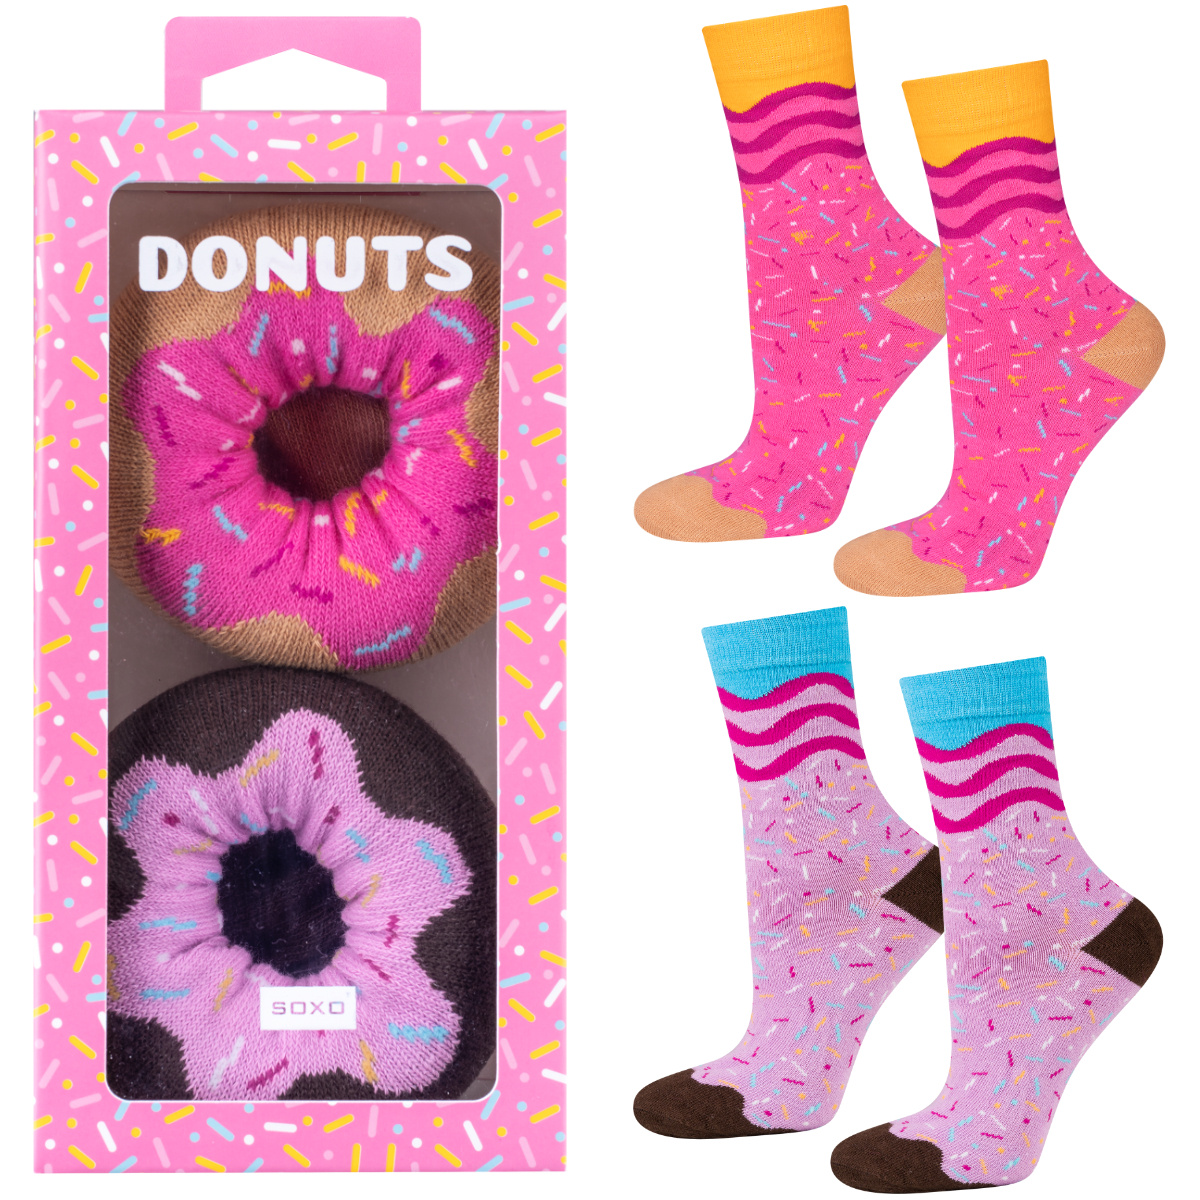 donuts socks